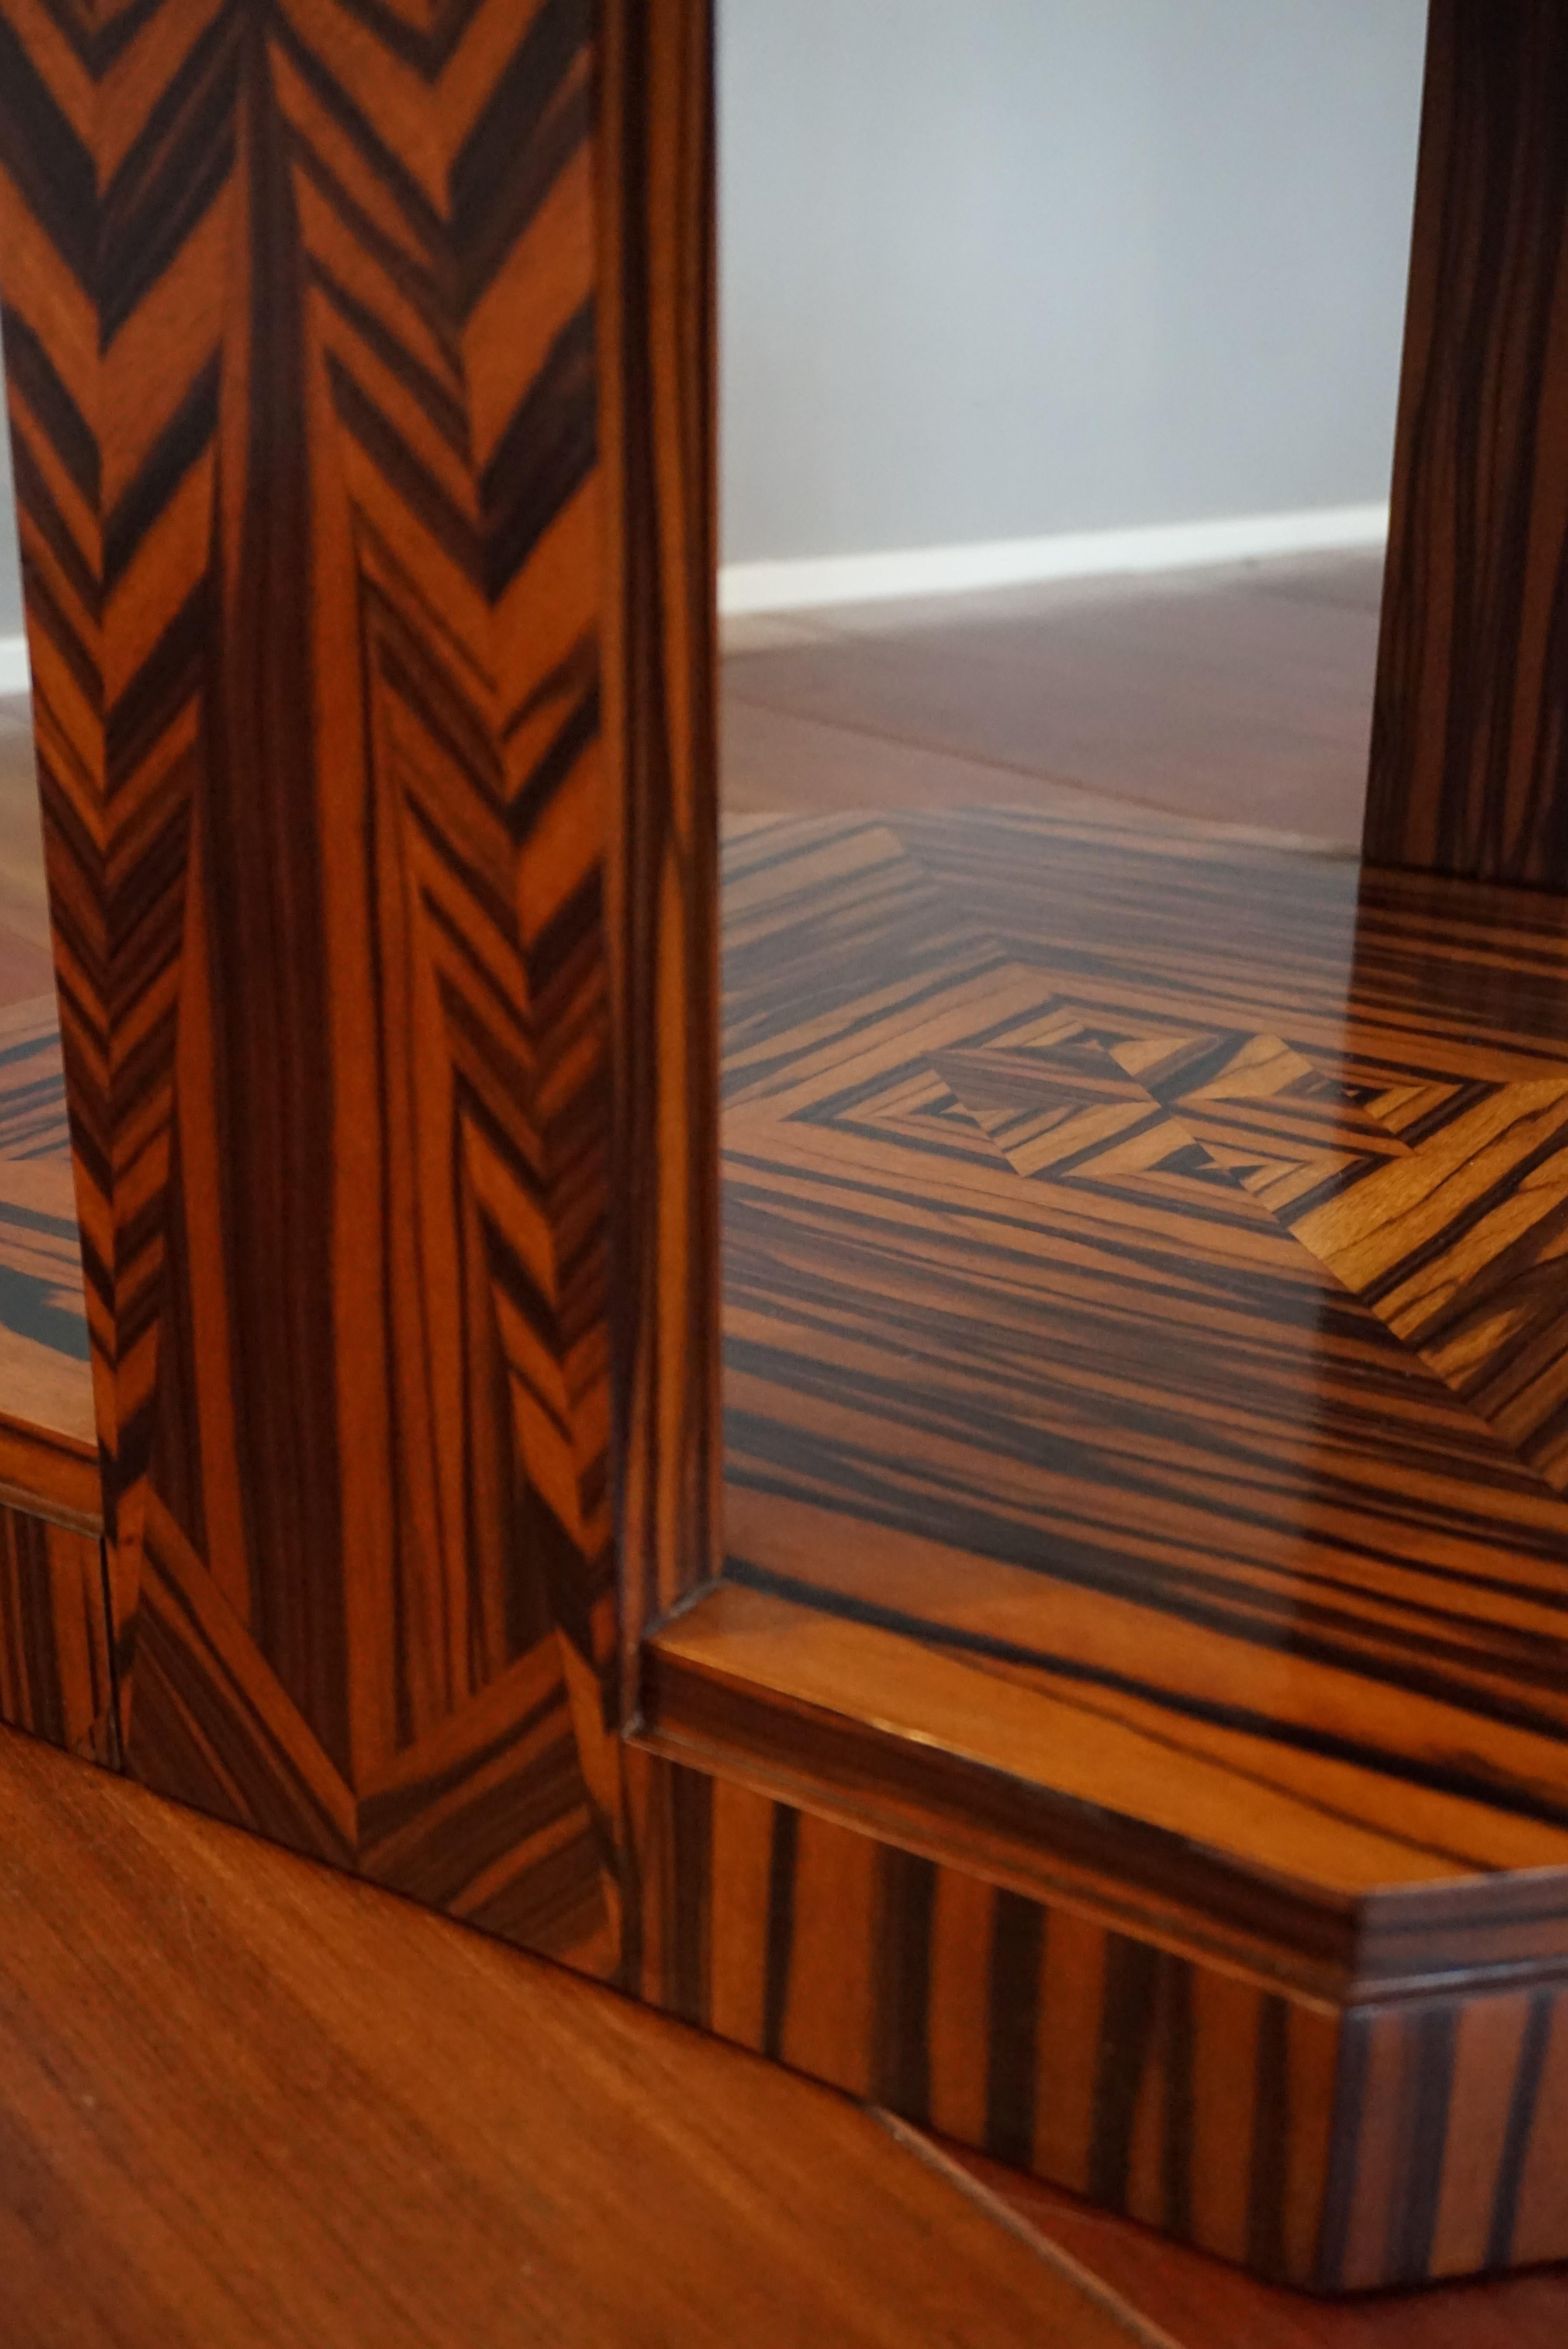 Unique Coromandel Art Deco Étagère Table with Stunning Inlaid Geometric Patterns 1